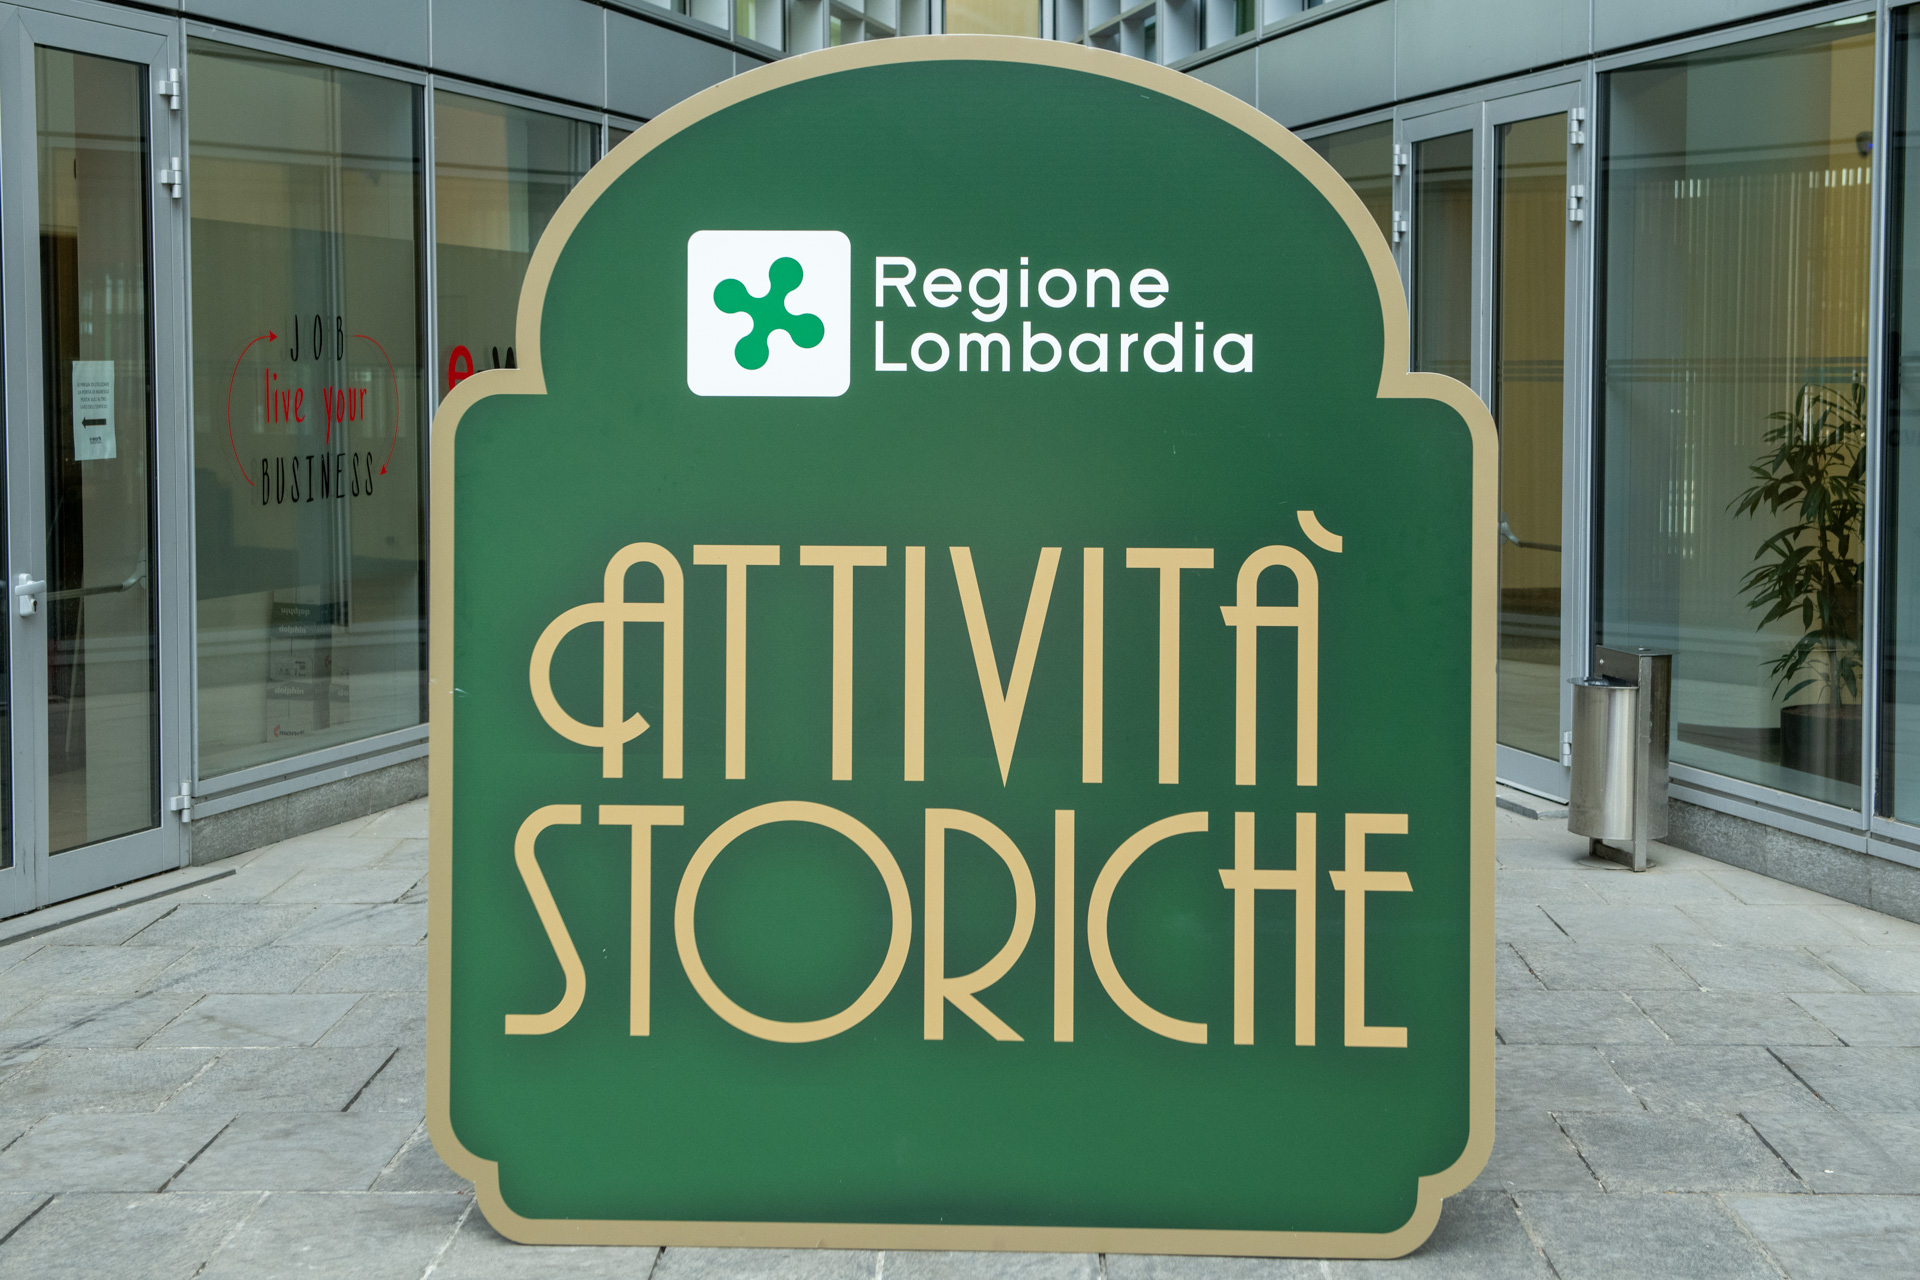 Arrivano altre 456 nuove attività storiche riconosciute da Regione Lombardia, l'assessore Guido Guidesi: è un importante patrimonio